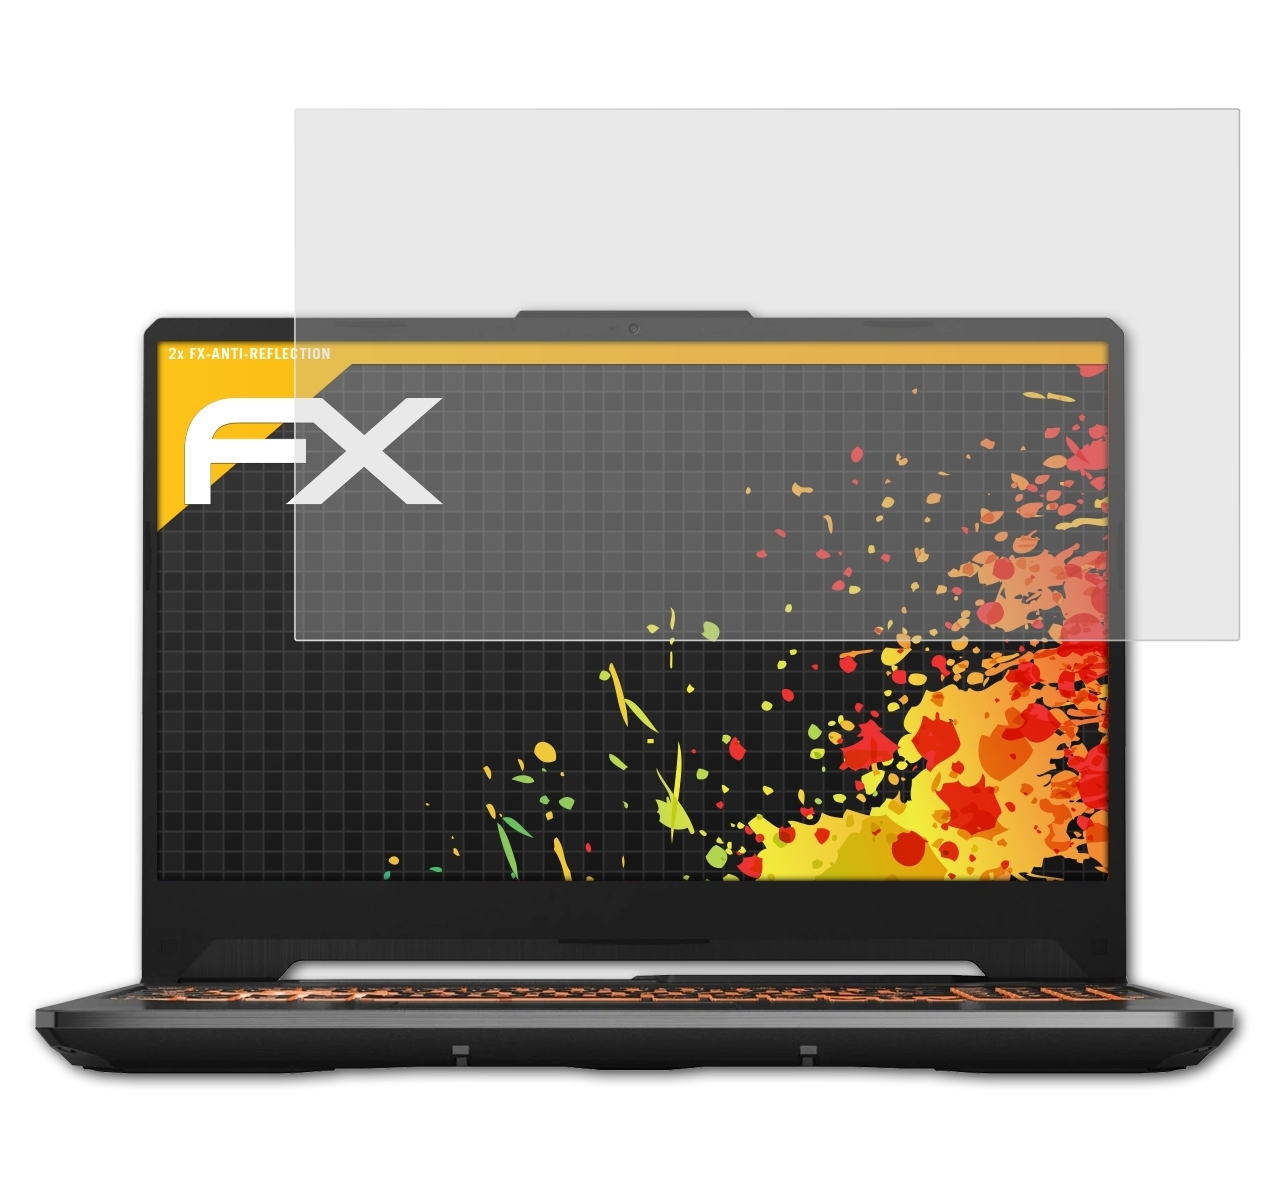 ATFOLIX 2x FX-Antireflex Displayschutz(für A15 TUF Asus Gaming (2020))